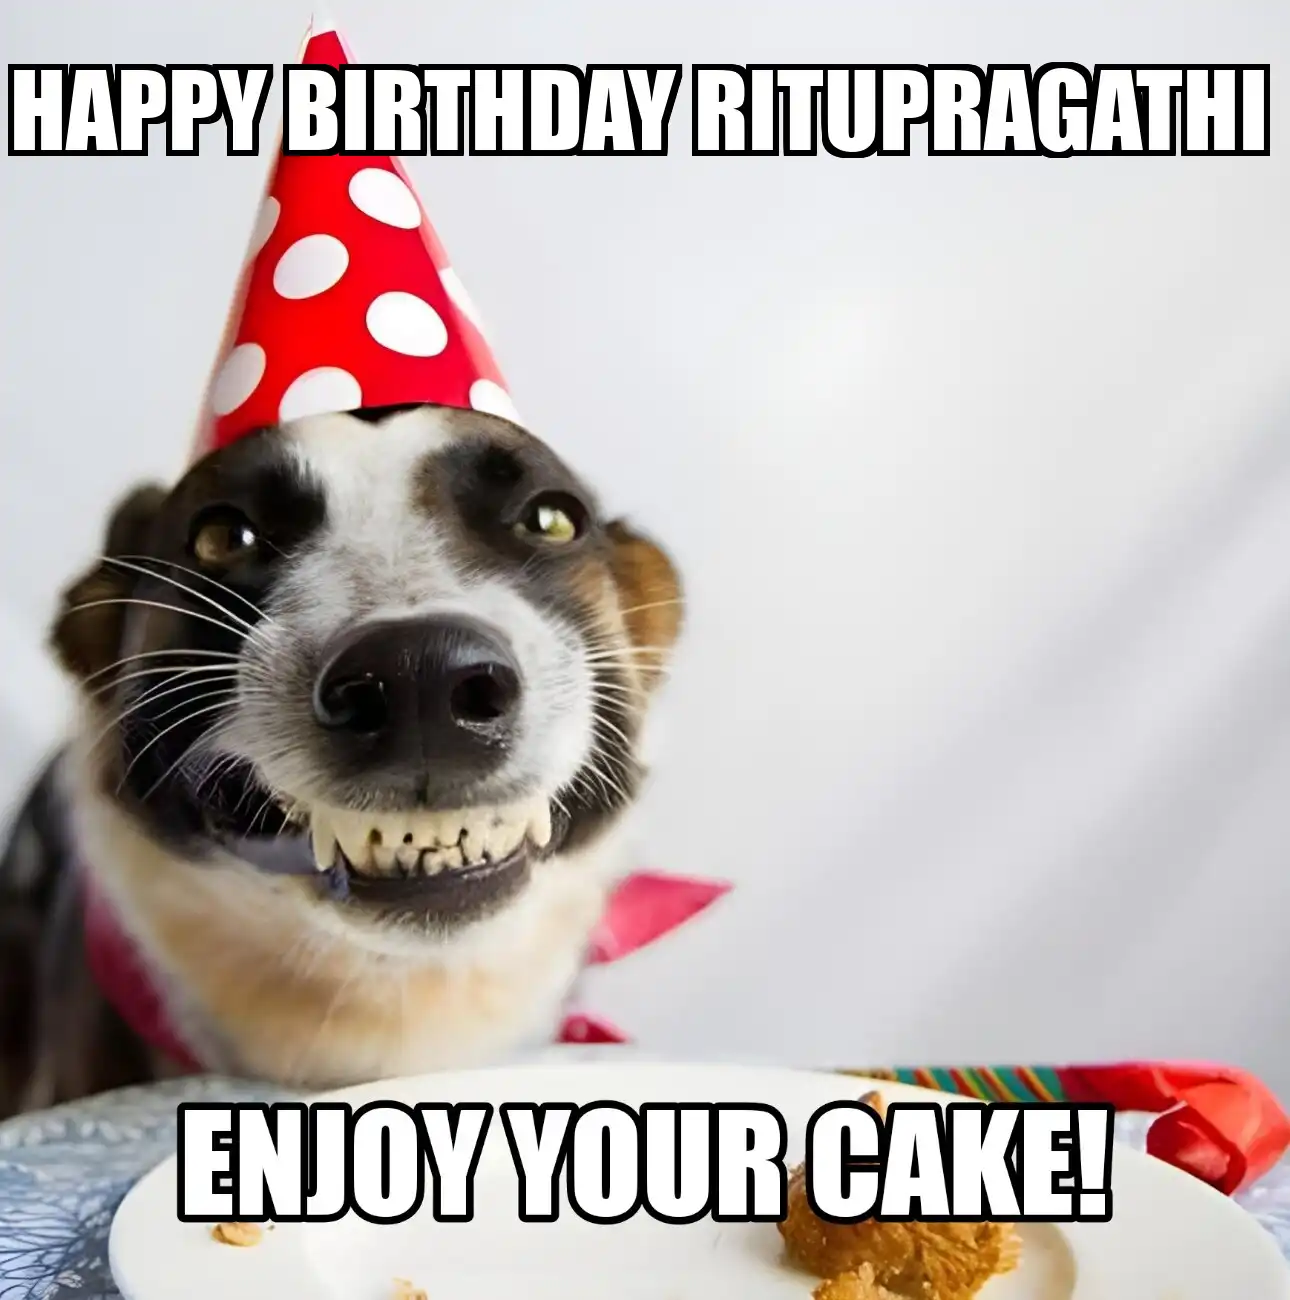 Happy Birthday Ritupragathi Enjoy Your Cake Dog Meme